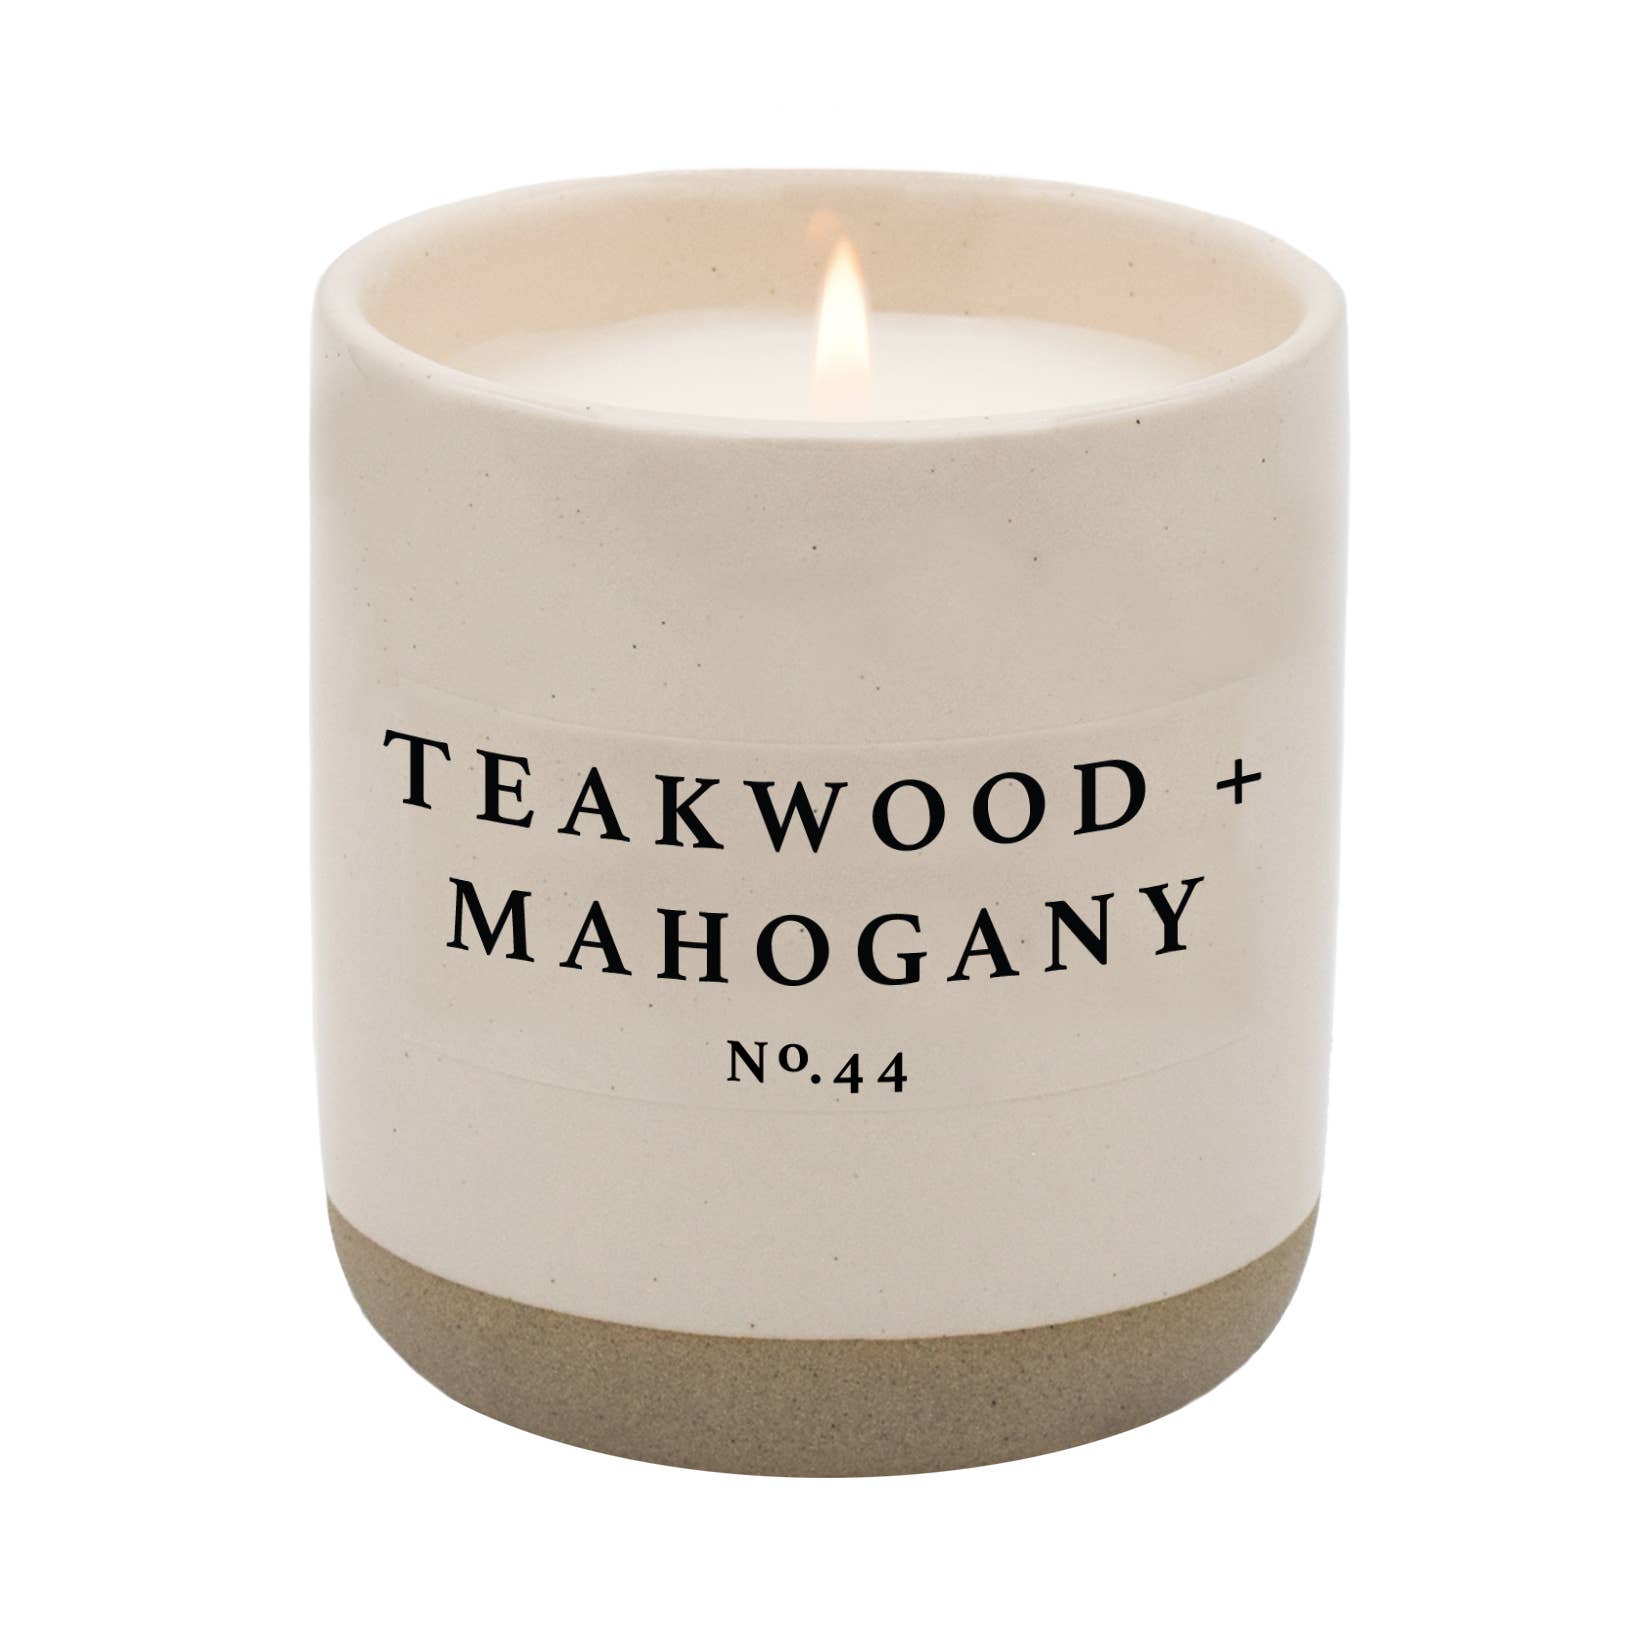 teakwood and mahogany soy candle- cream stoneware jar- 12 oz